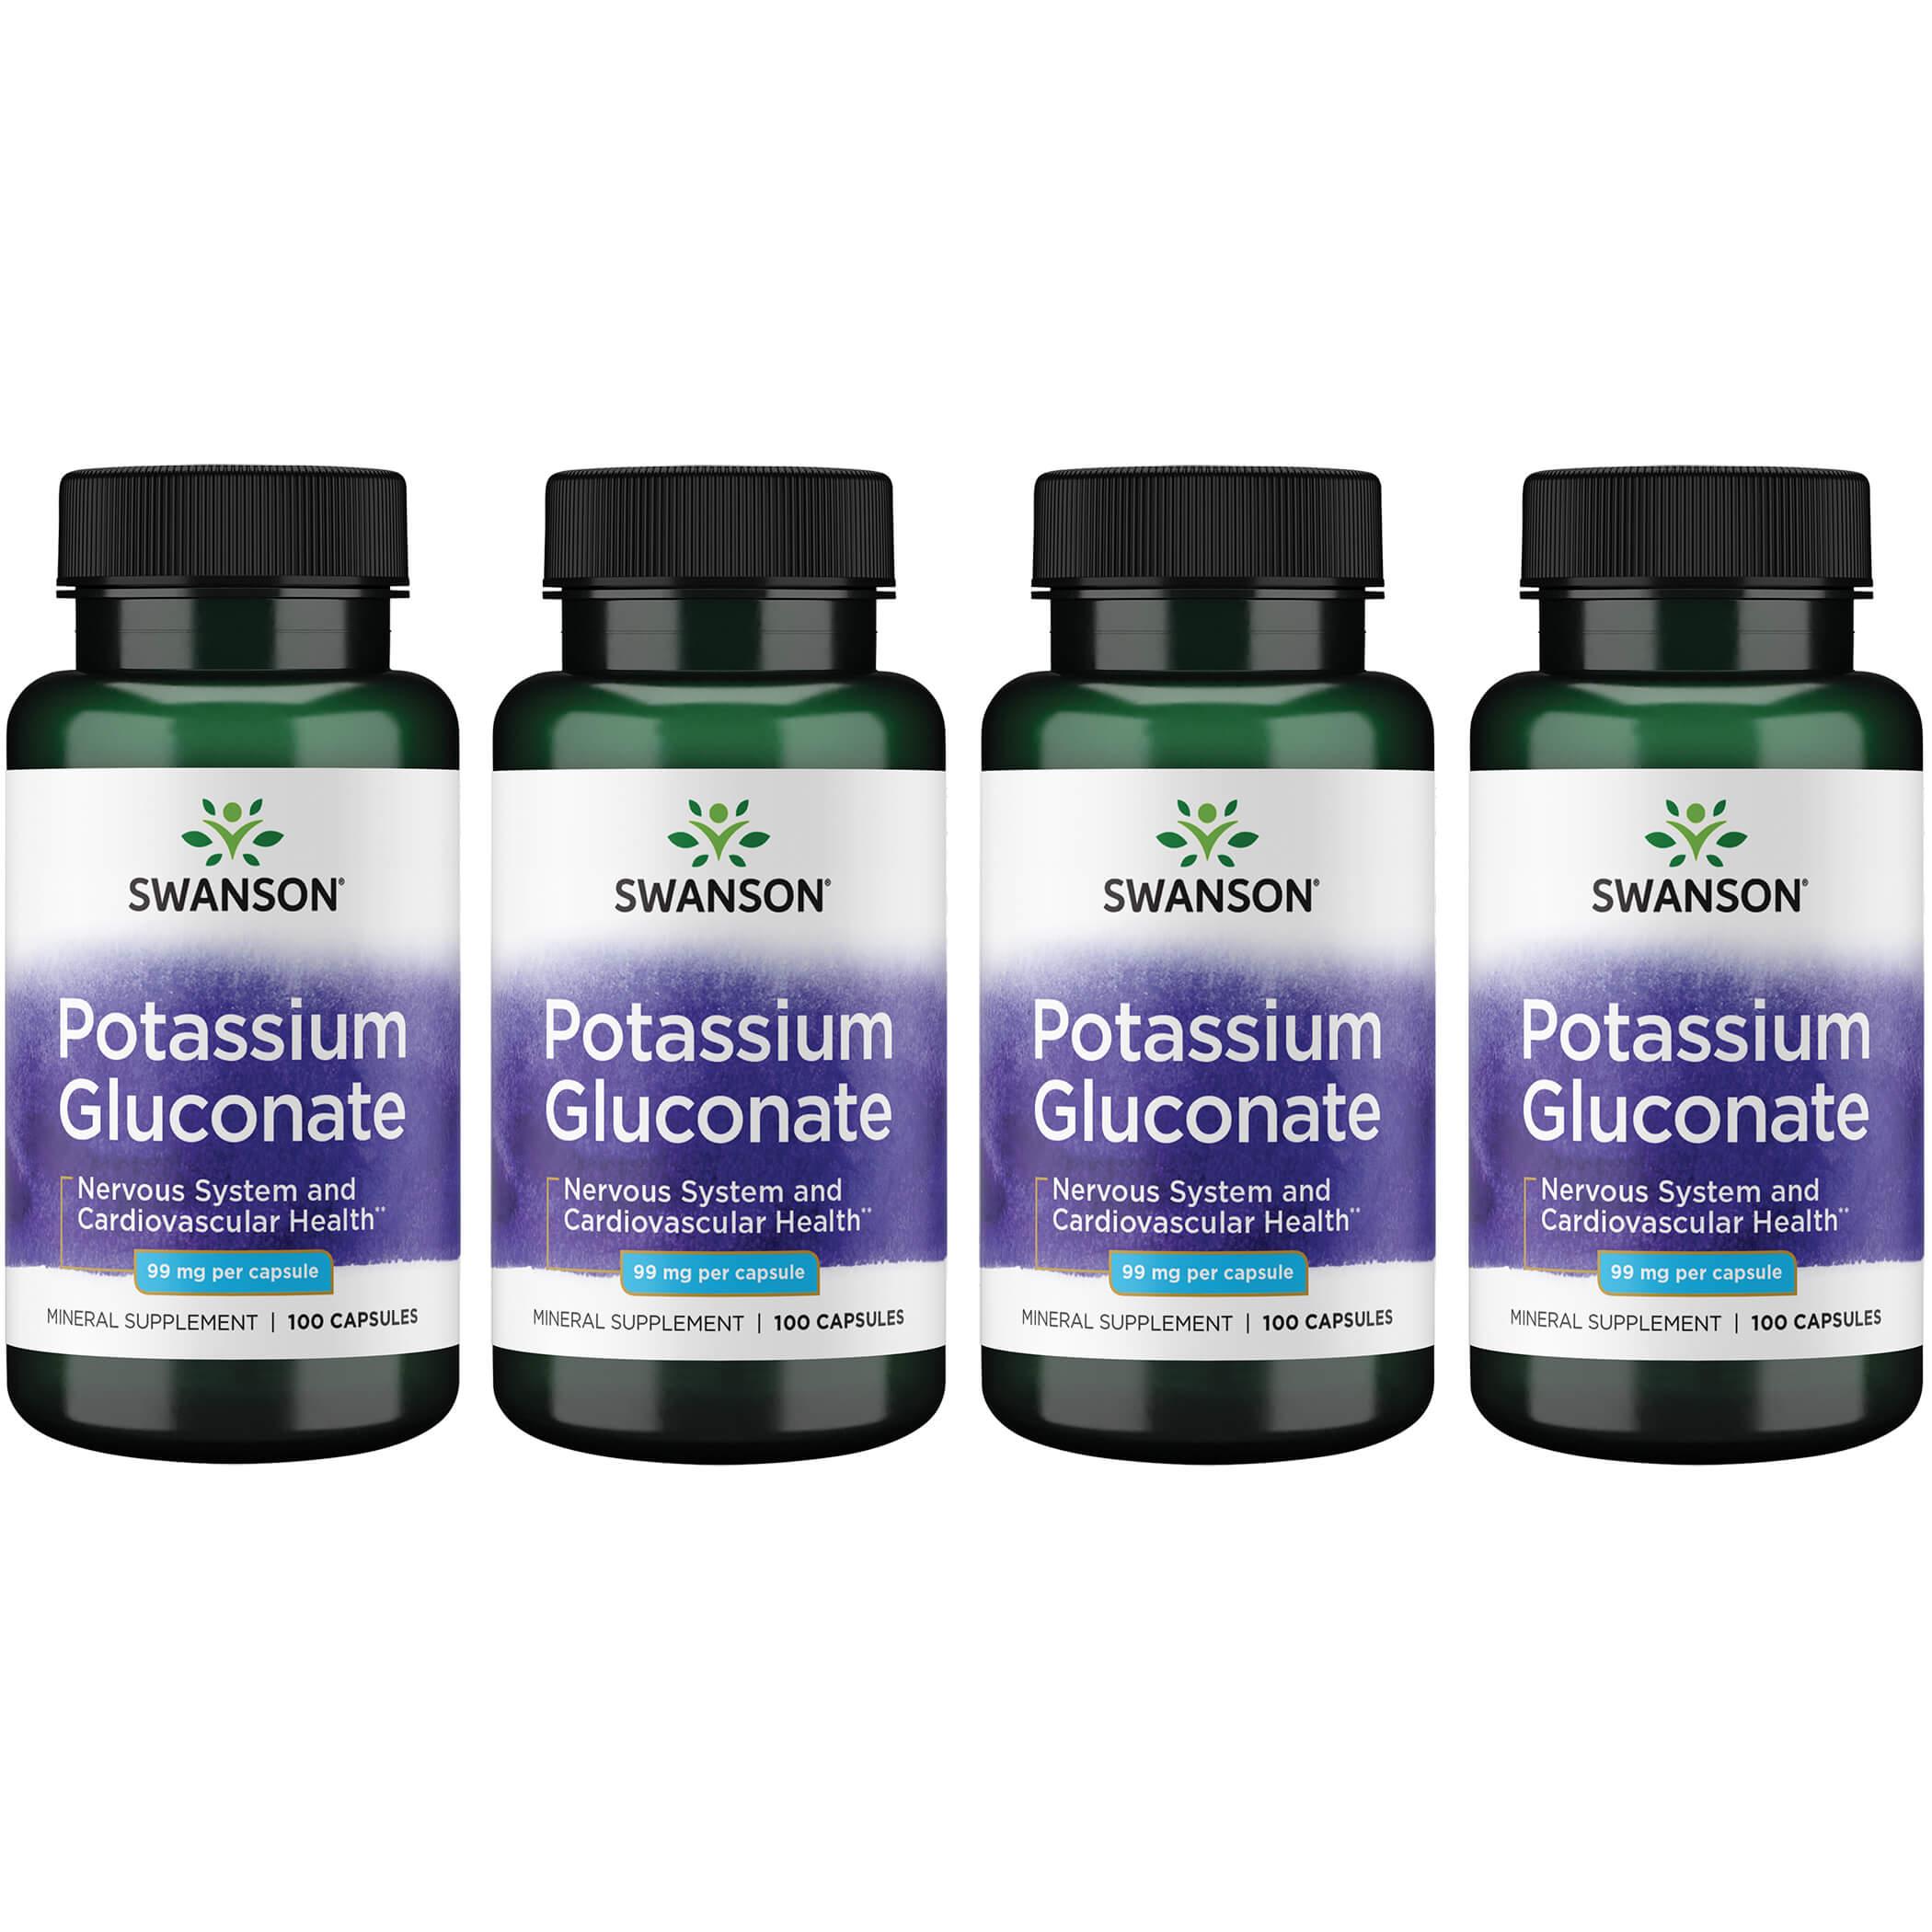 Swanson Premium Potassium Gluconate 4 Pack Vitamin 99 mg 100 Caps